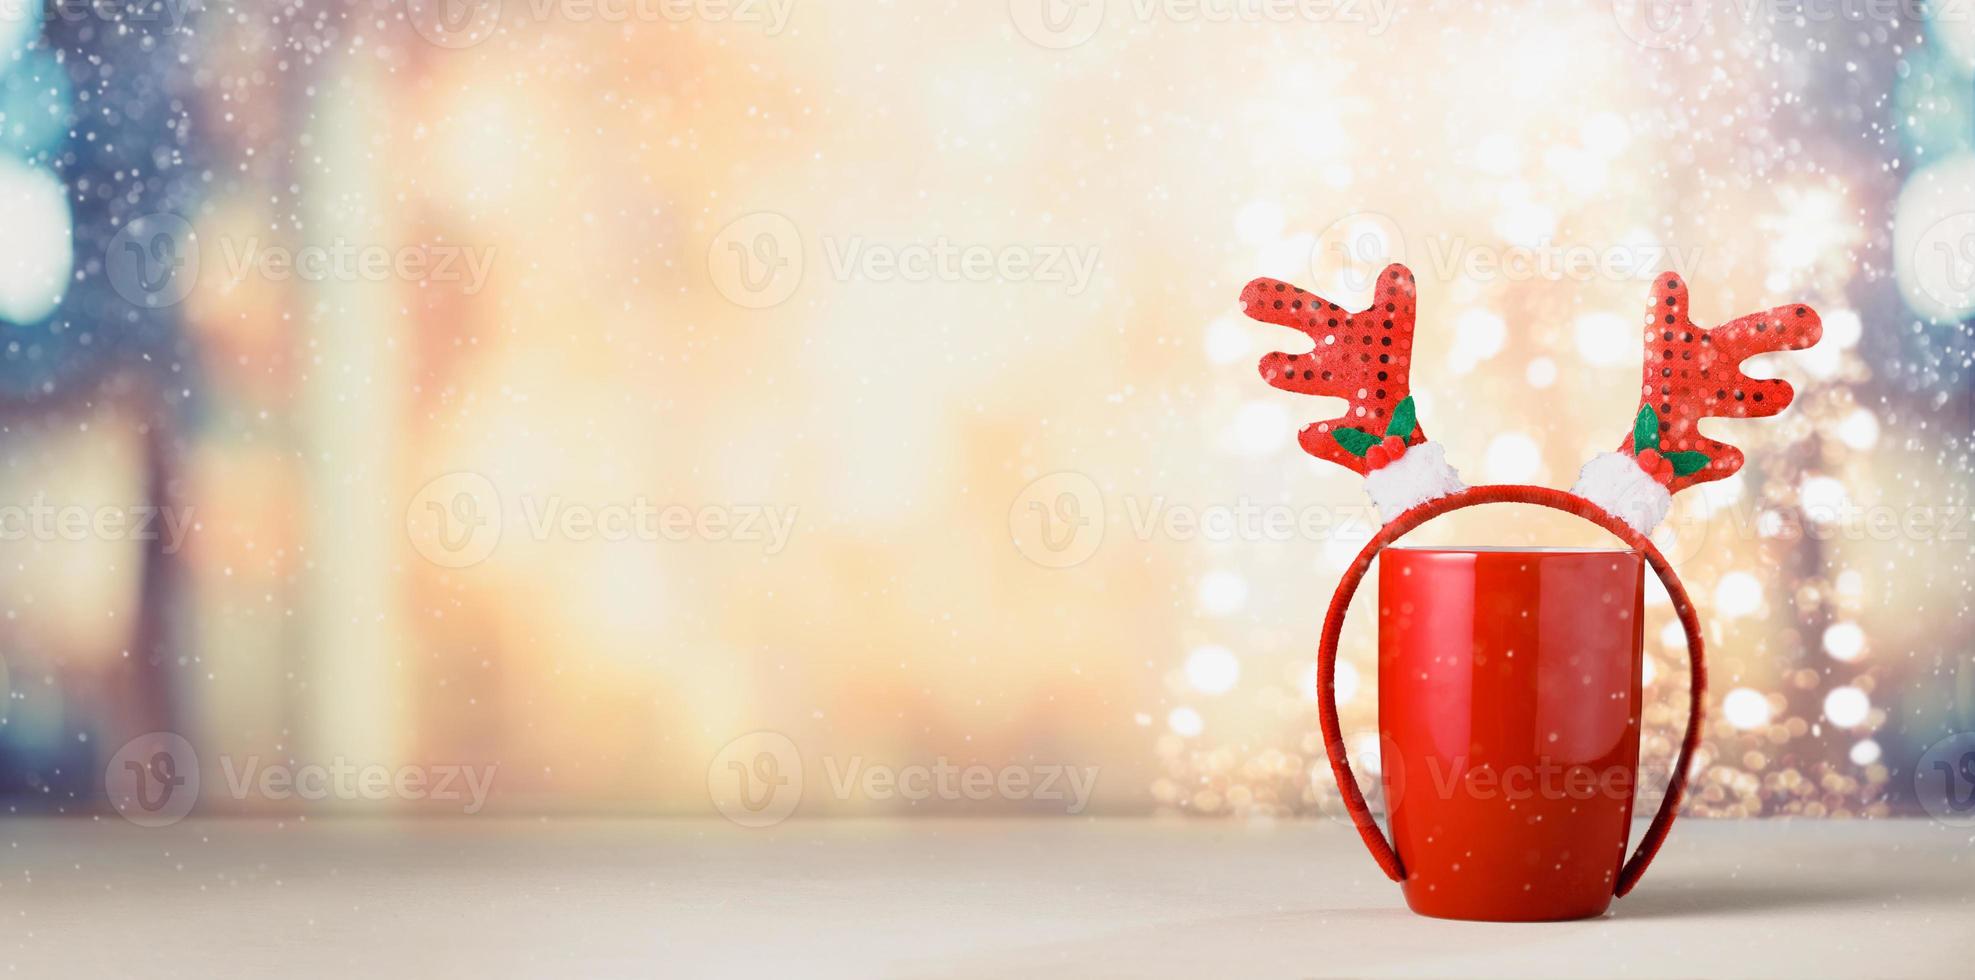 anler über rote tasse weihnachtskonzept foto